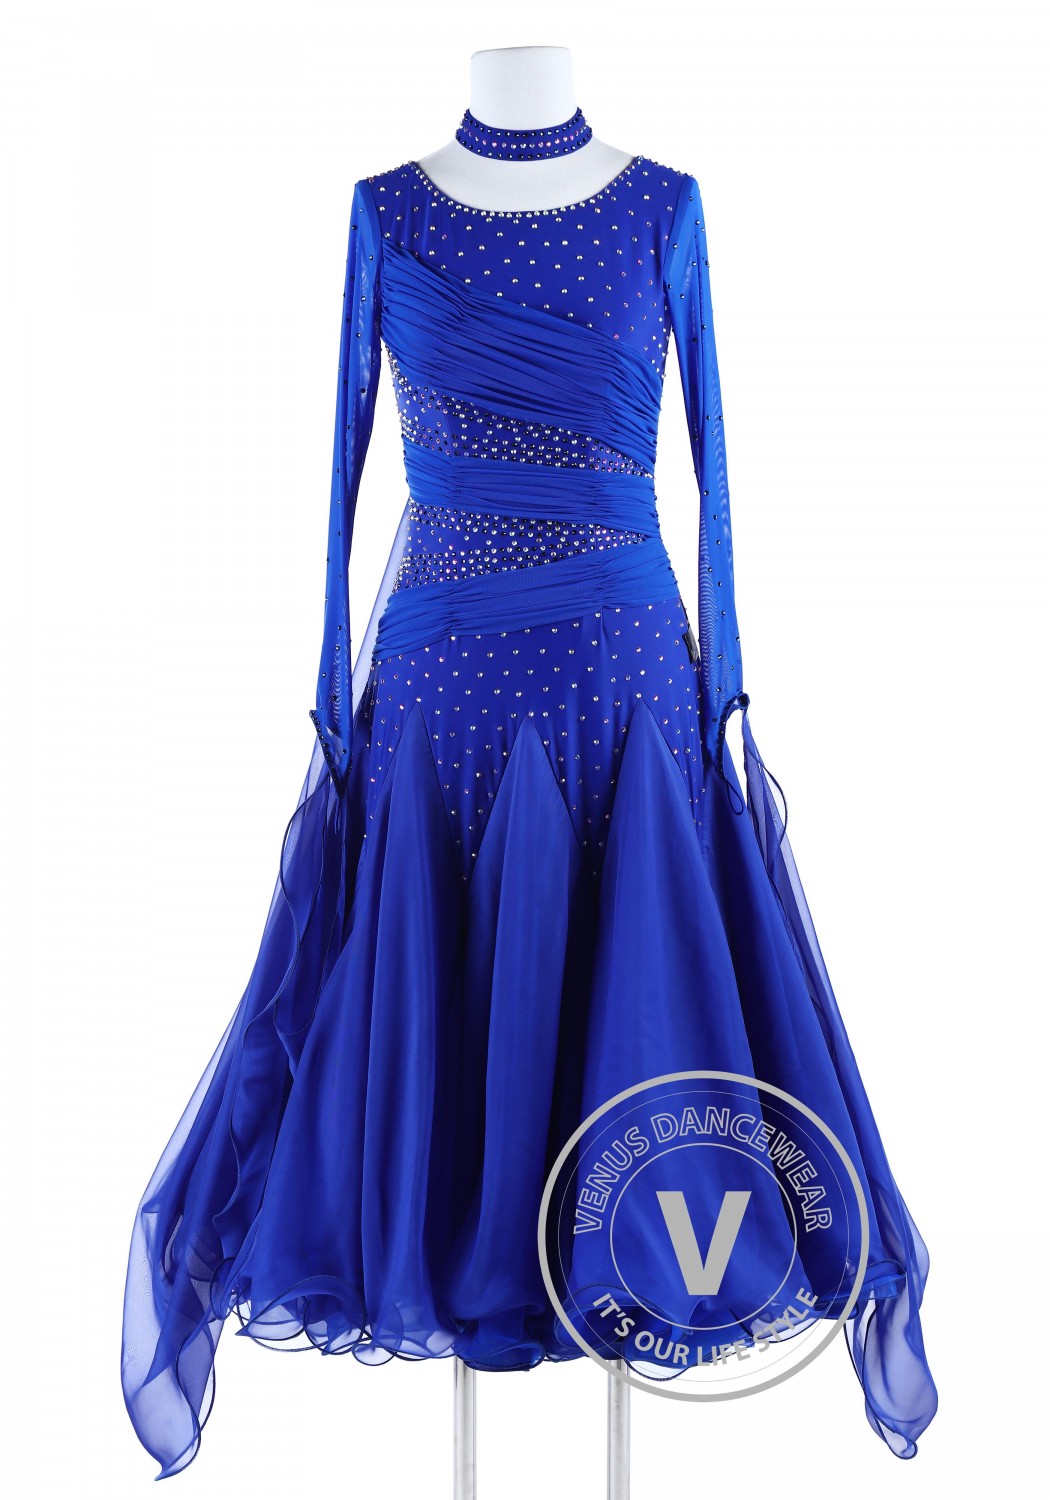 Starry Sky Standard Waltz Quickstep Foxtrot Dancing Dress